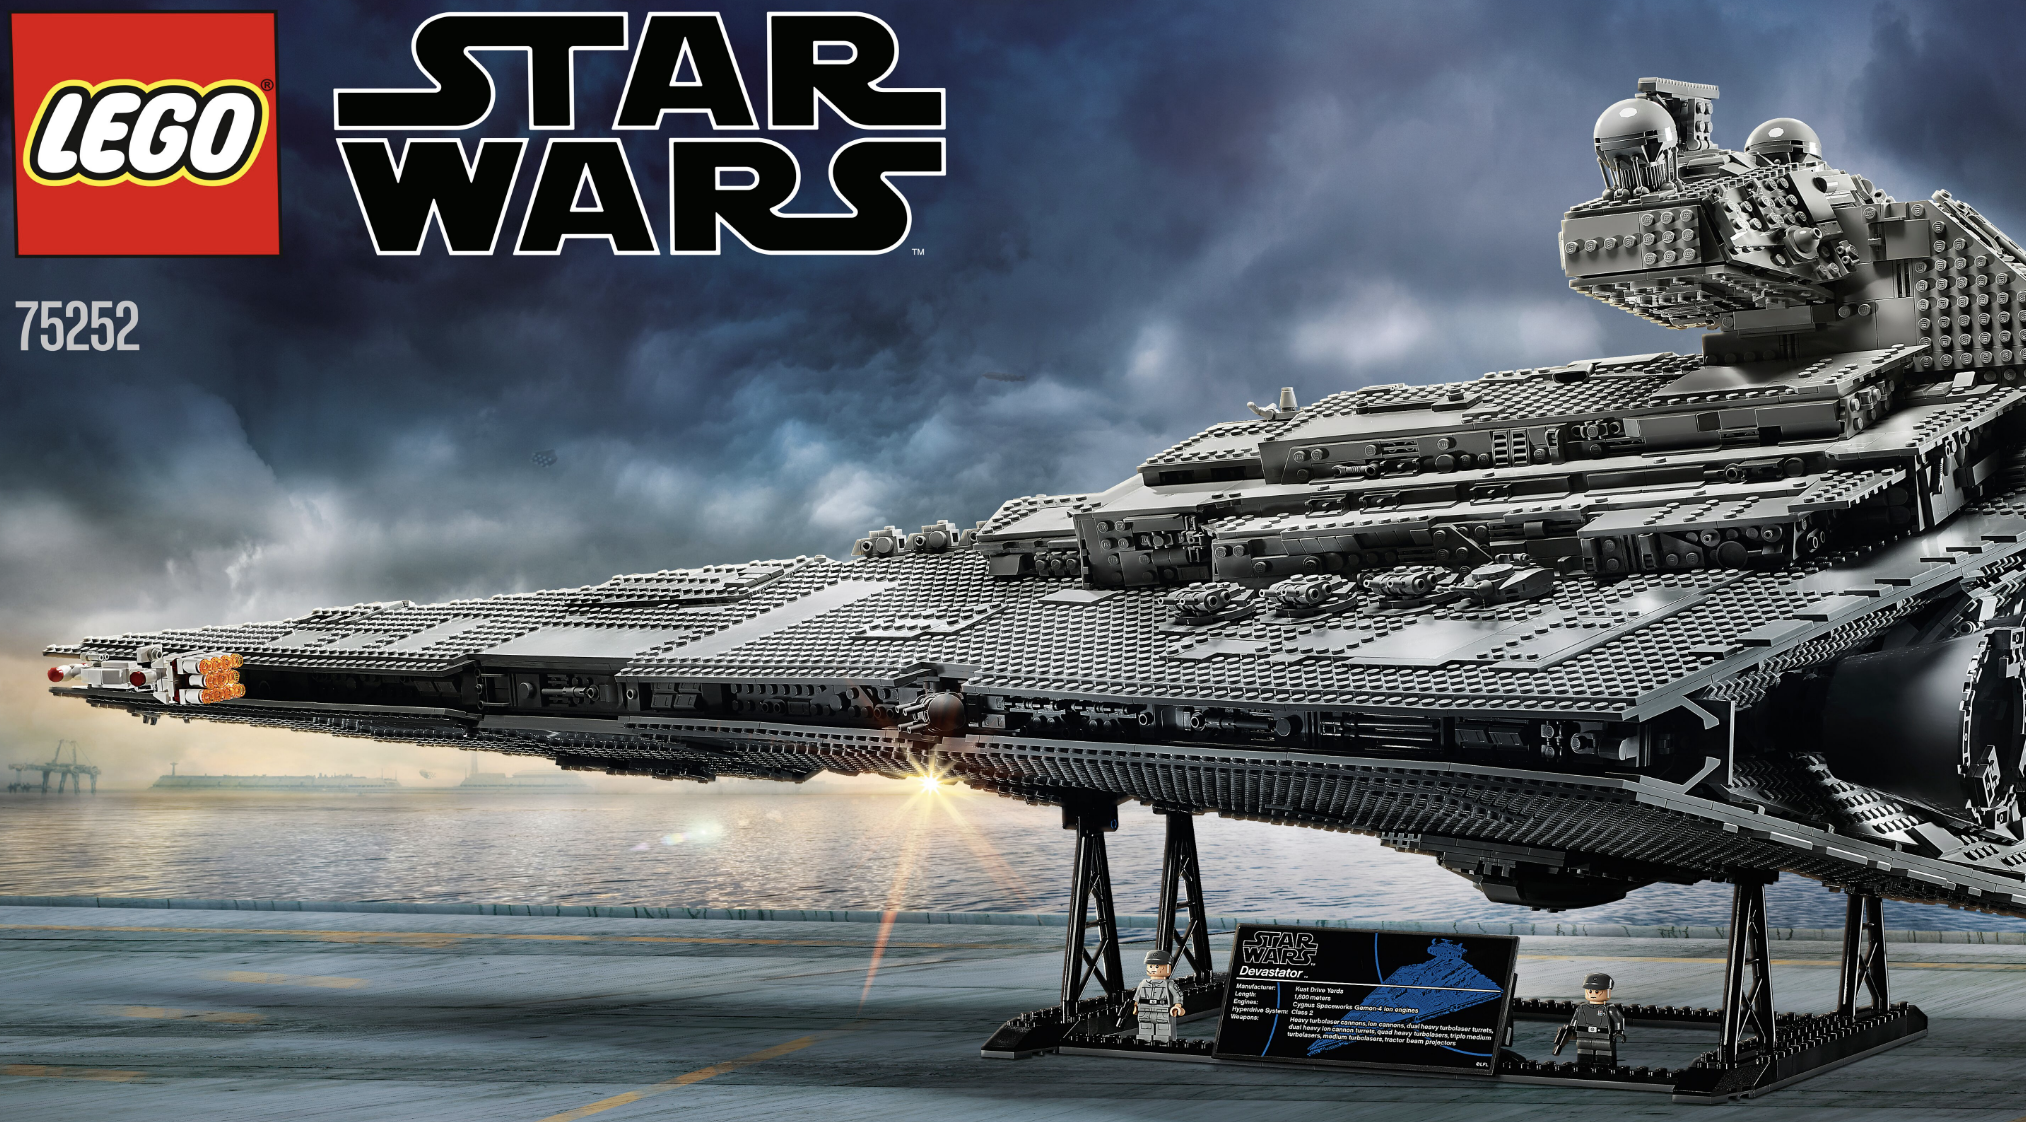 Un vaisseau Star Wars en Lego de plus 30 kilos !  Lego star wars, Imperial star  destroyers, Lego star wars sets